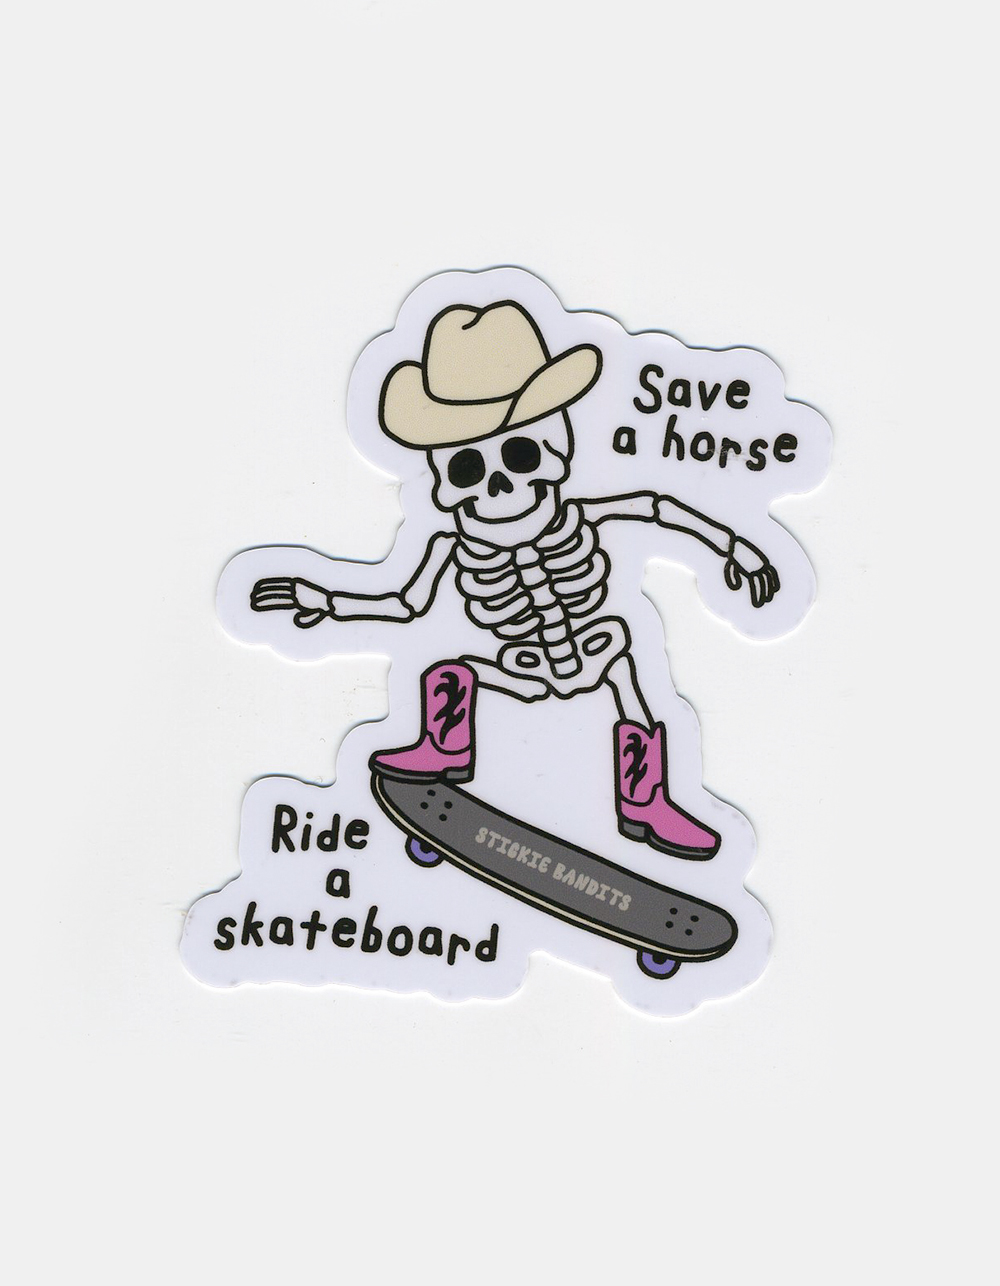 Sticker Squelette Skate - Stickers Skate